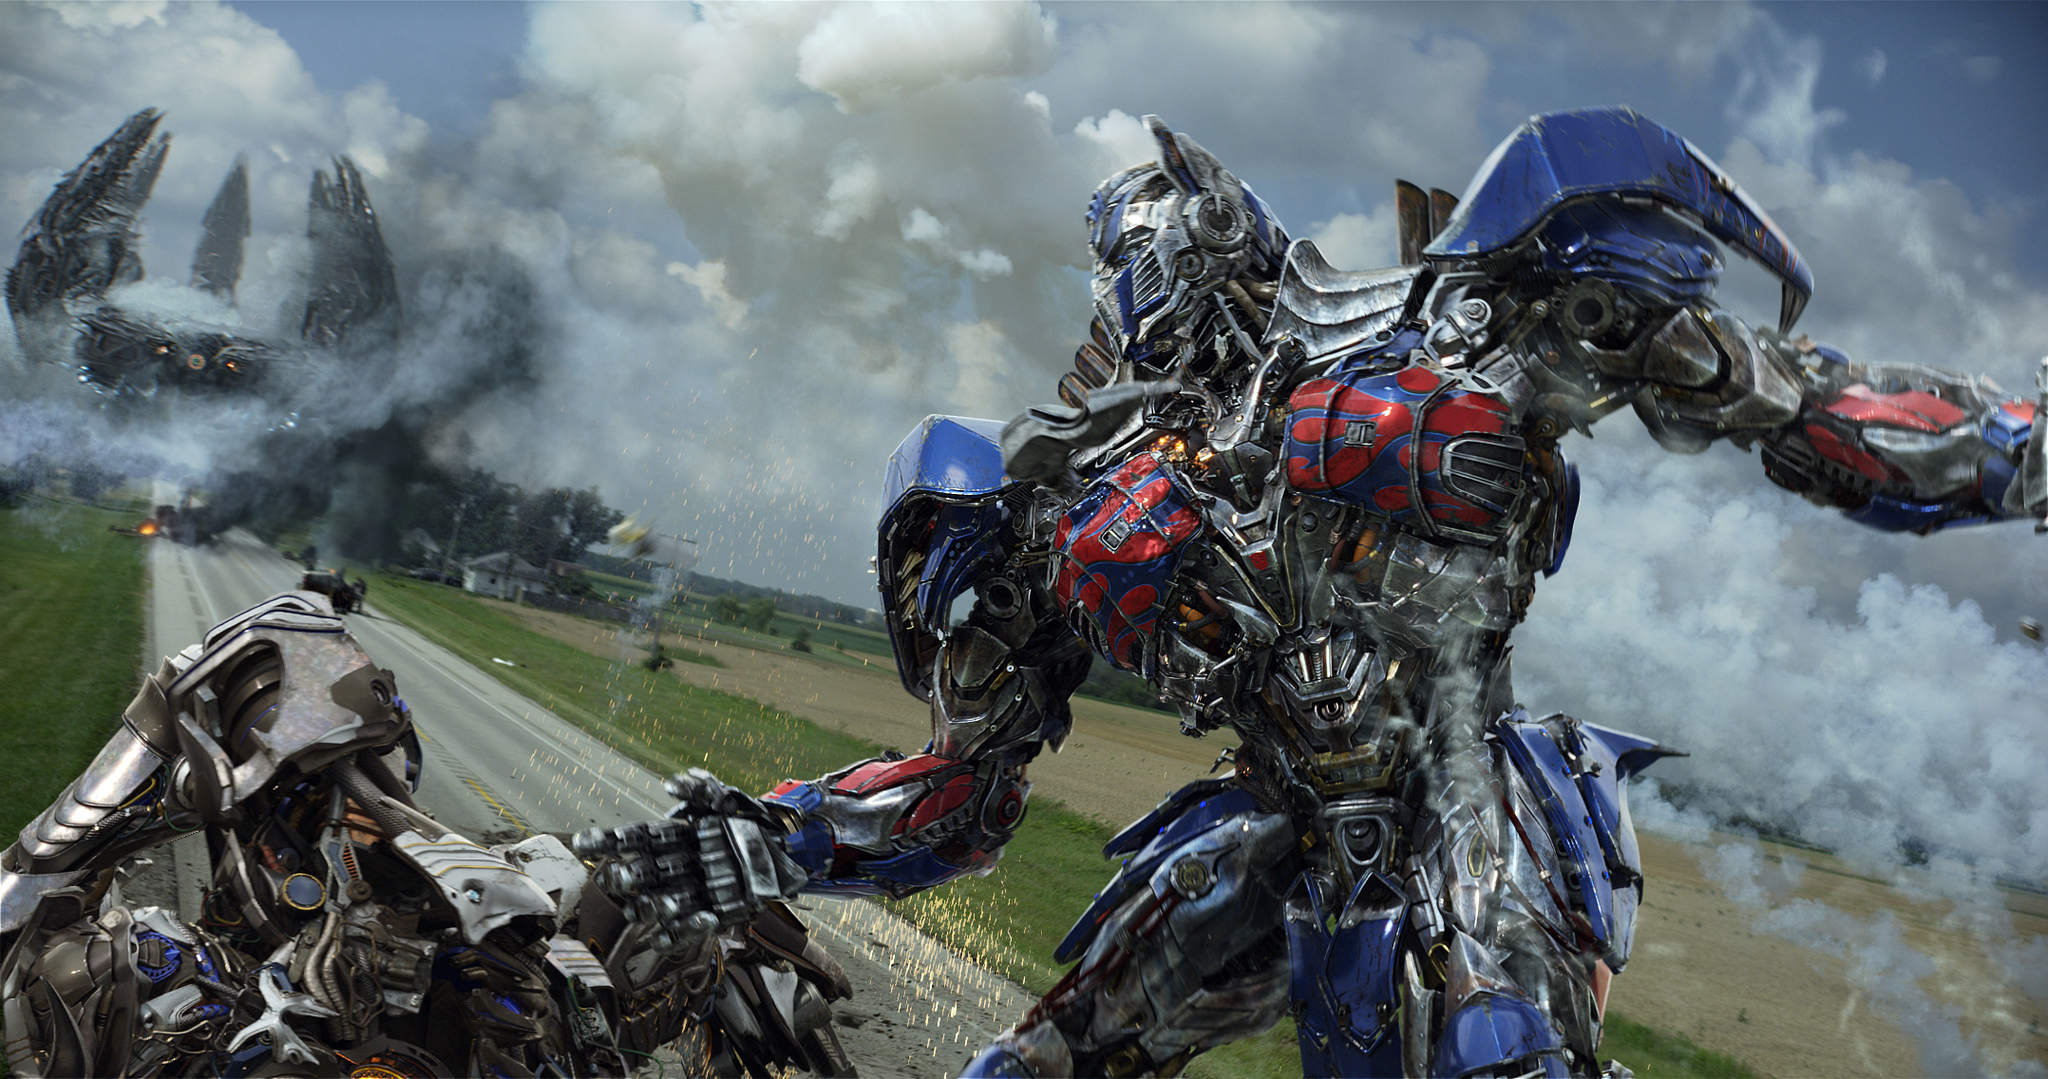 Xem Phim Transformers: Kỷ Nguyên Hủy Diệt, Transformers: Age of Extinction 2014